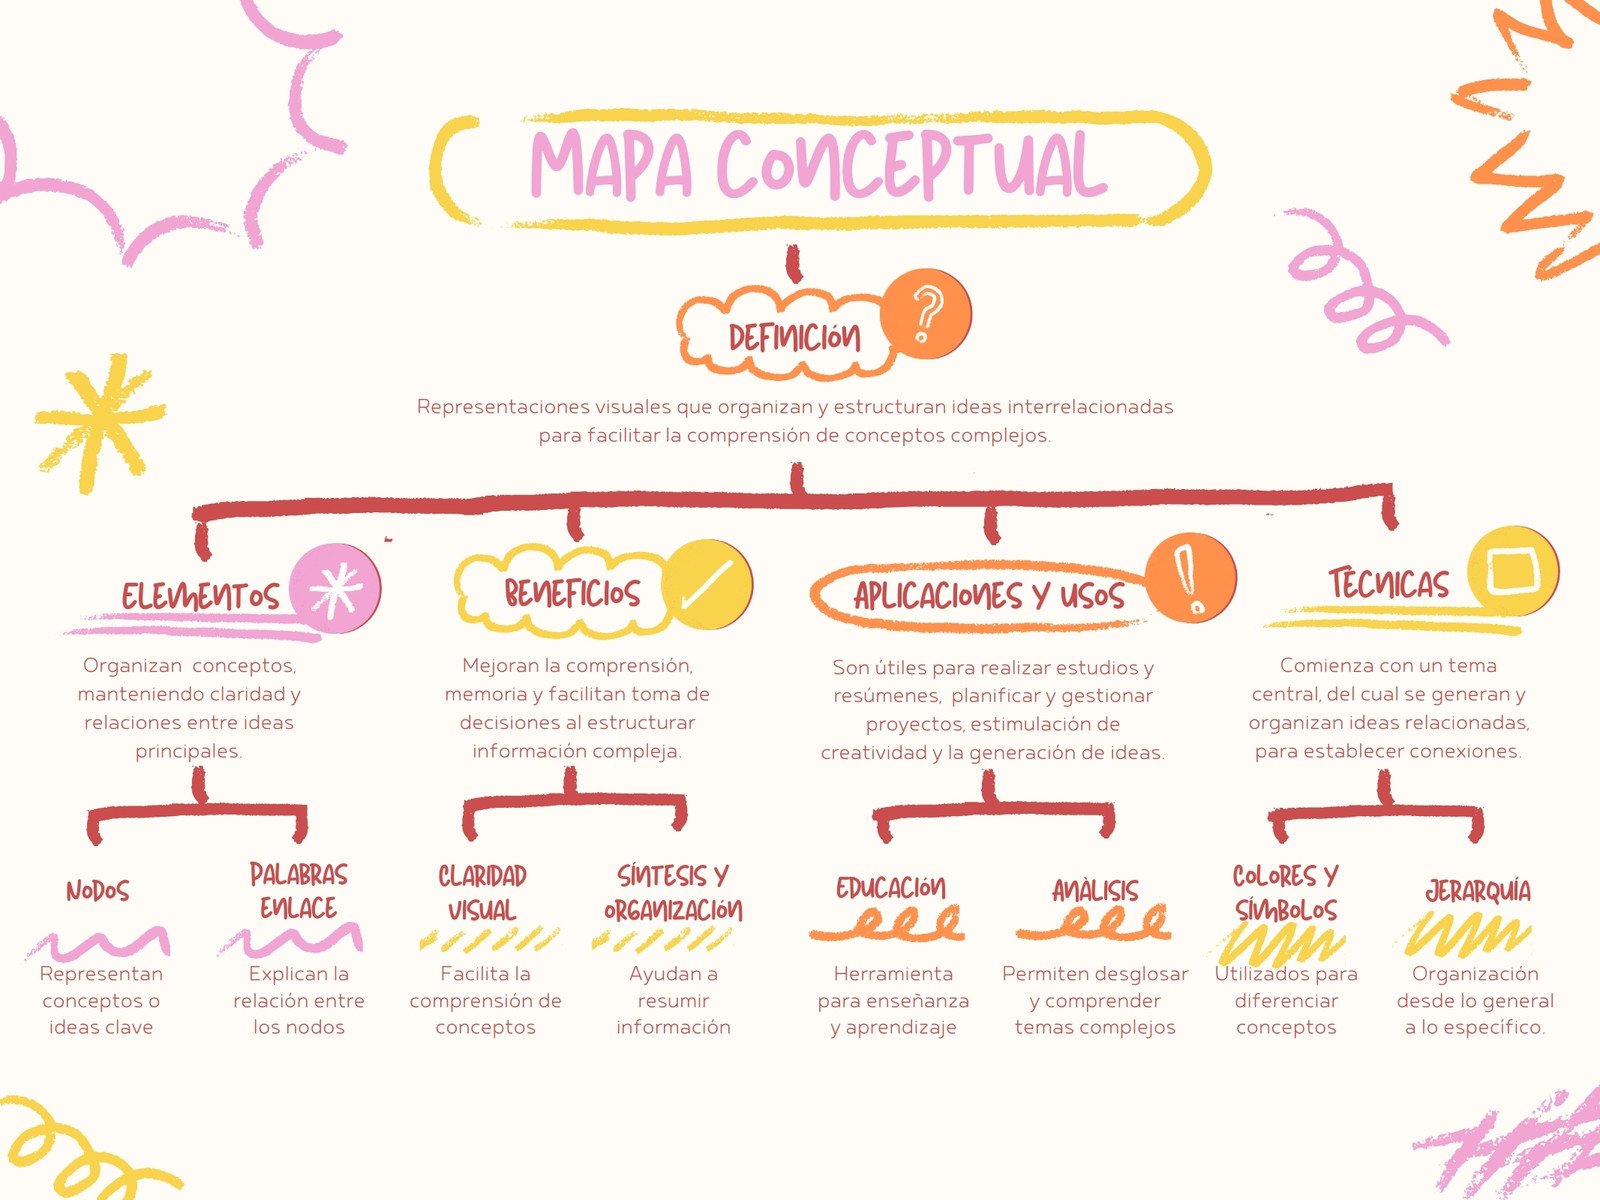 Mapa Conceptual Diagrama Creativo Scribbles y Doodles Rosa Amarillo